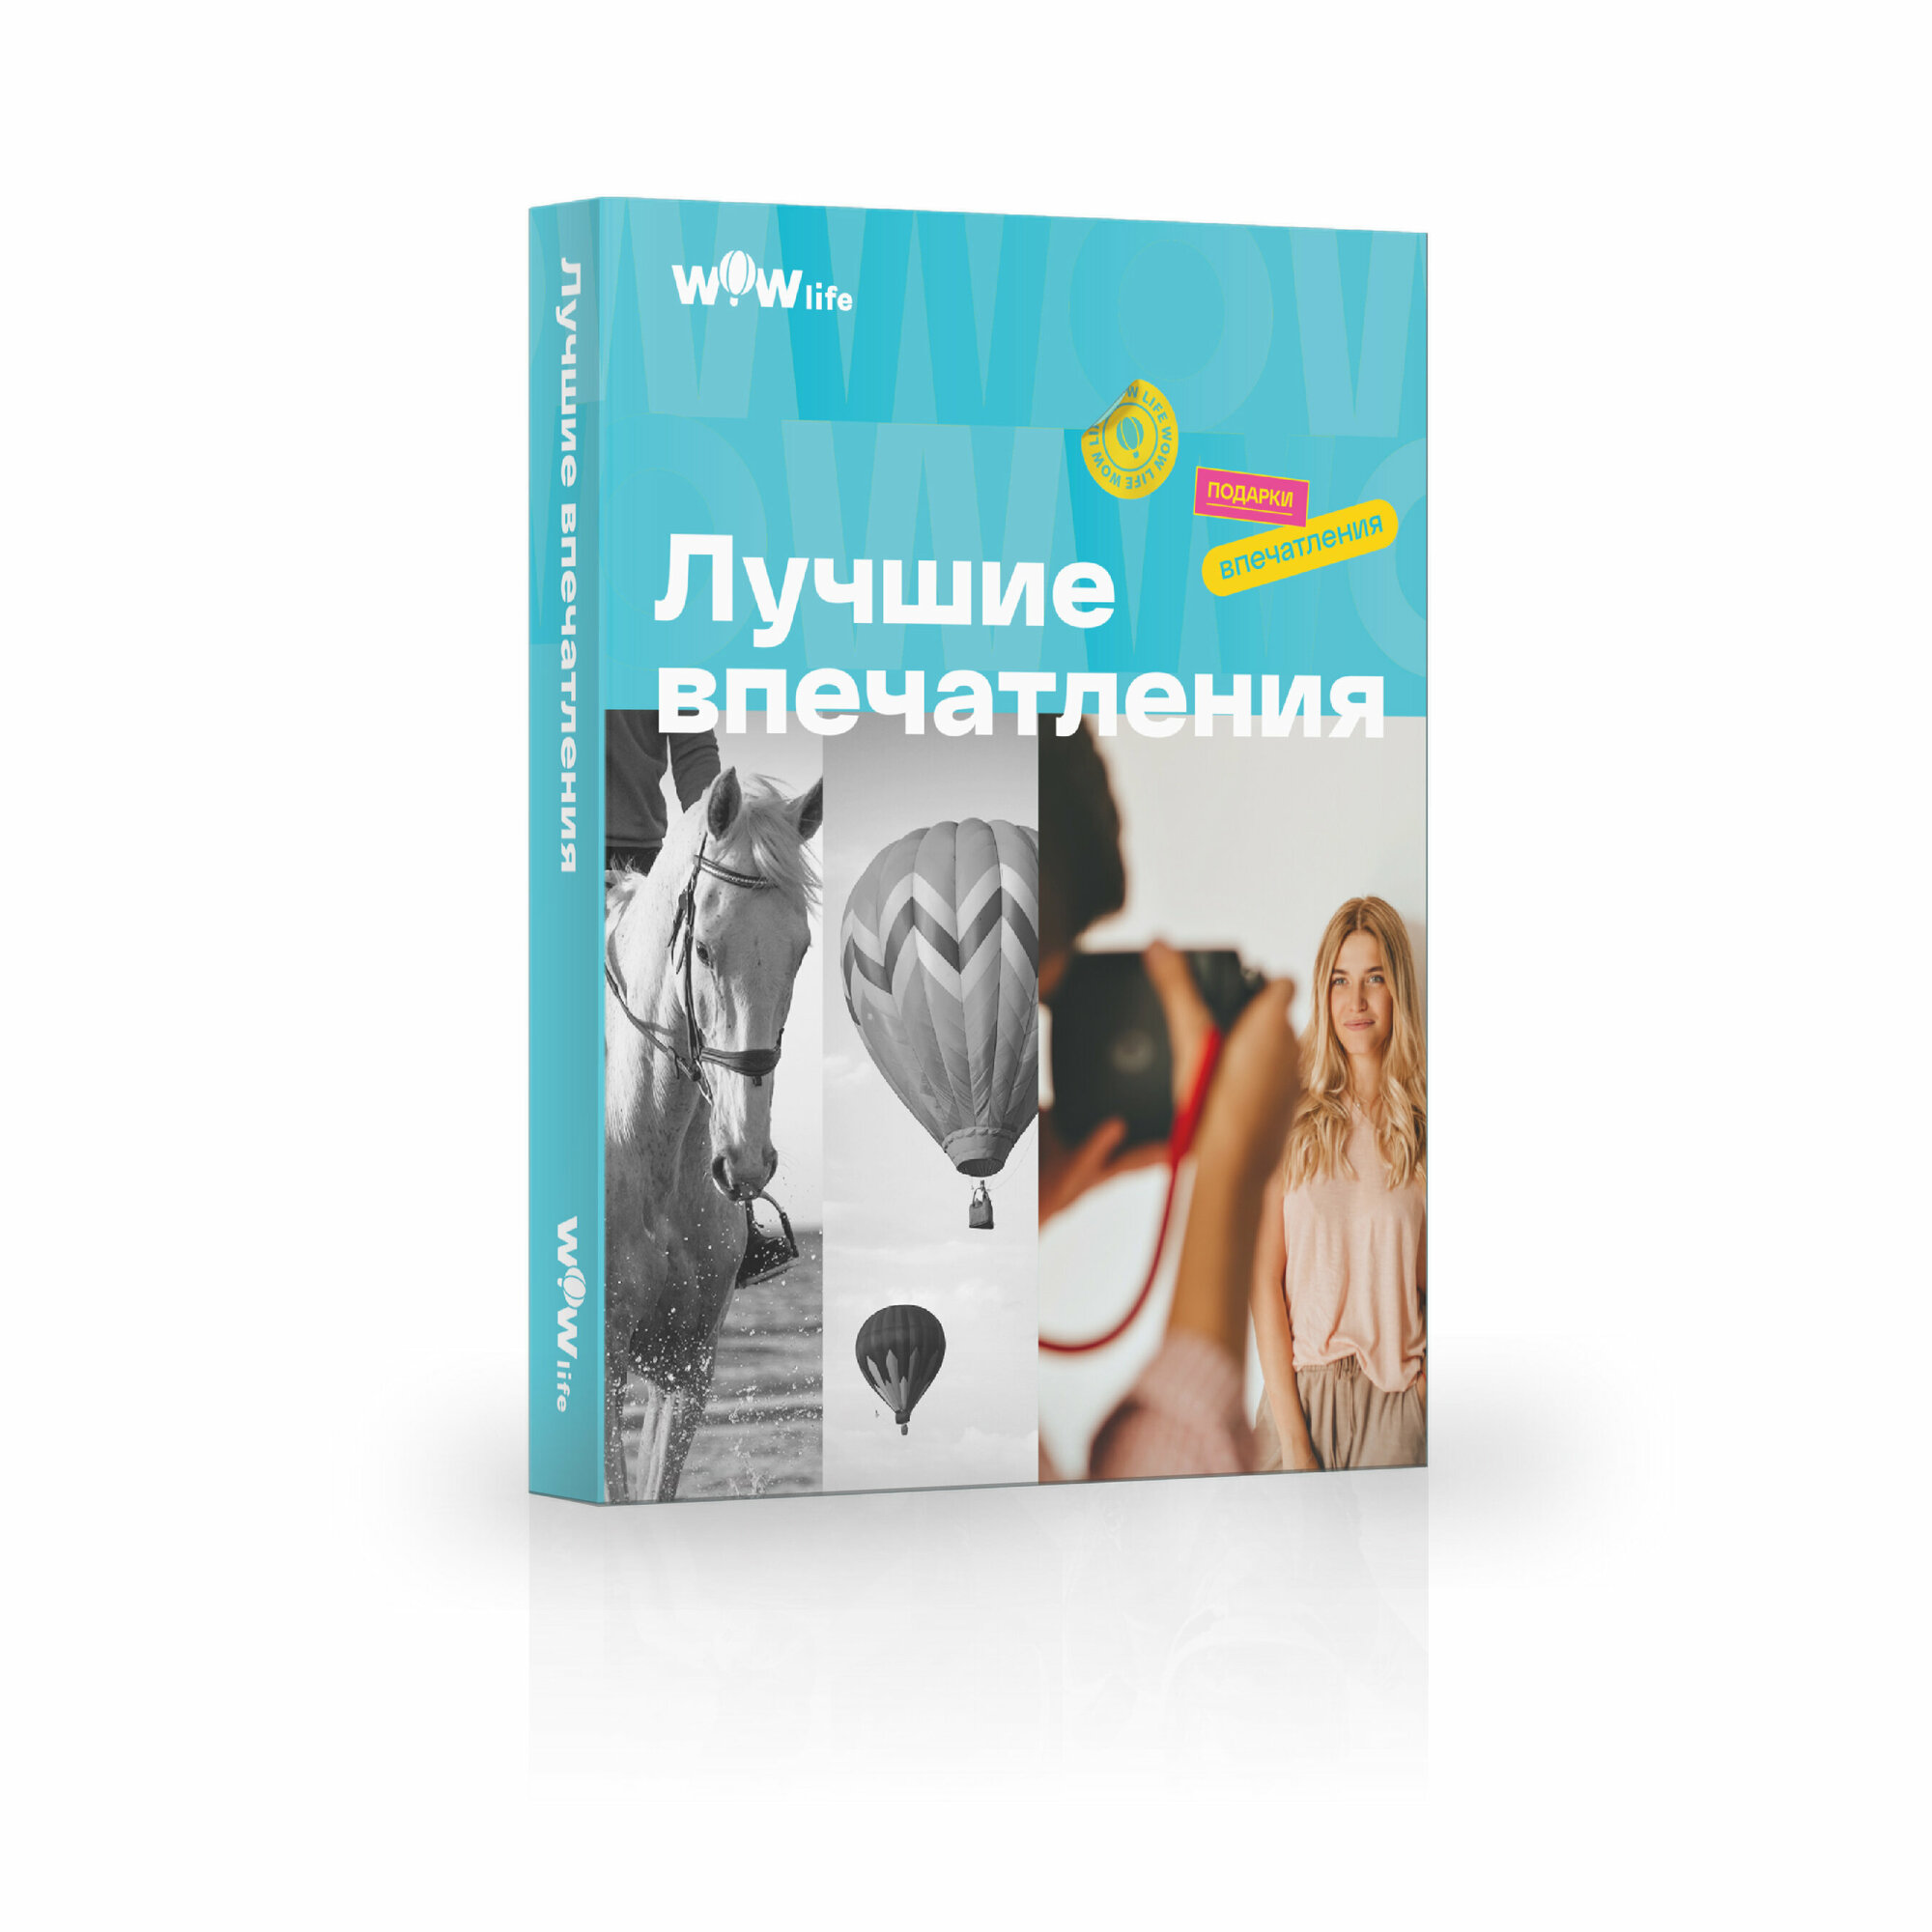 Подарочный сертификат WOWlife "Лучшие впечатления" - набор из впечатлений на выбор, Санкт-Петербург